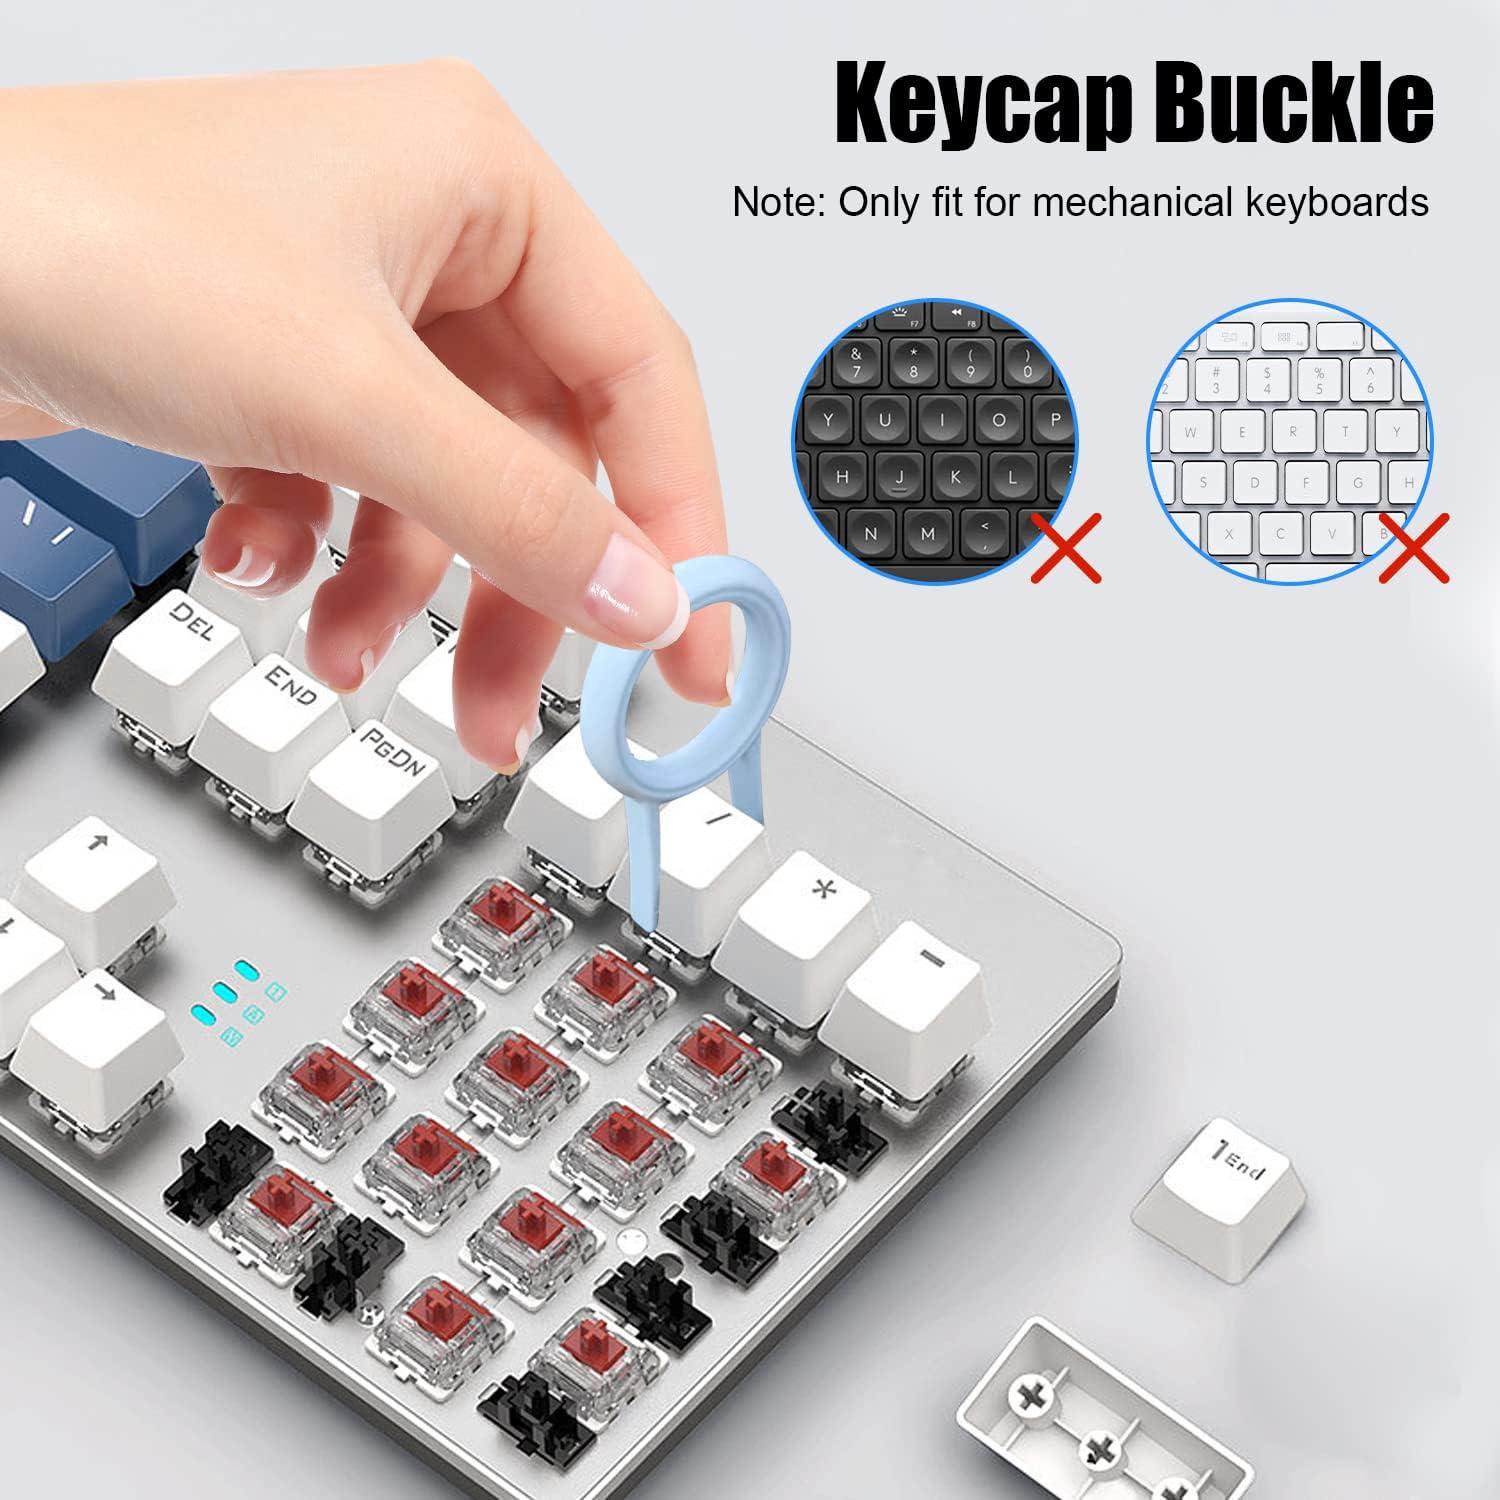 7 In 1 Keyboard Cleaning Brush Kit, Multifunctional Keyboard